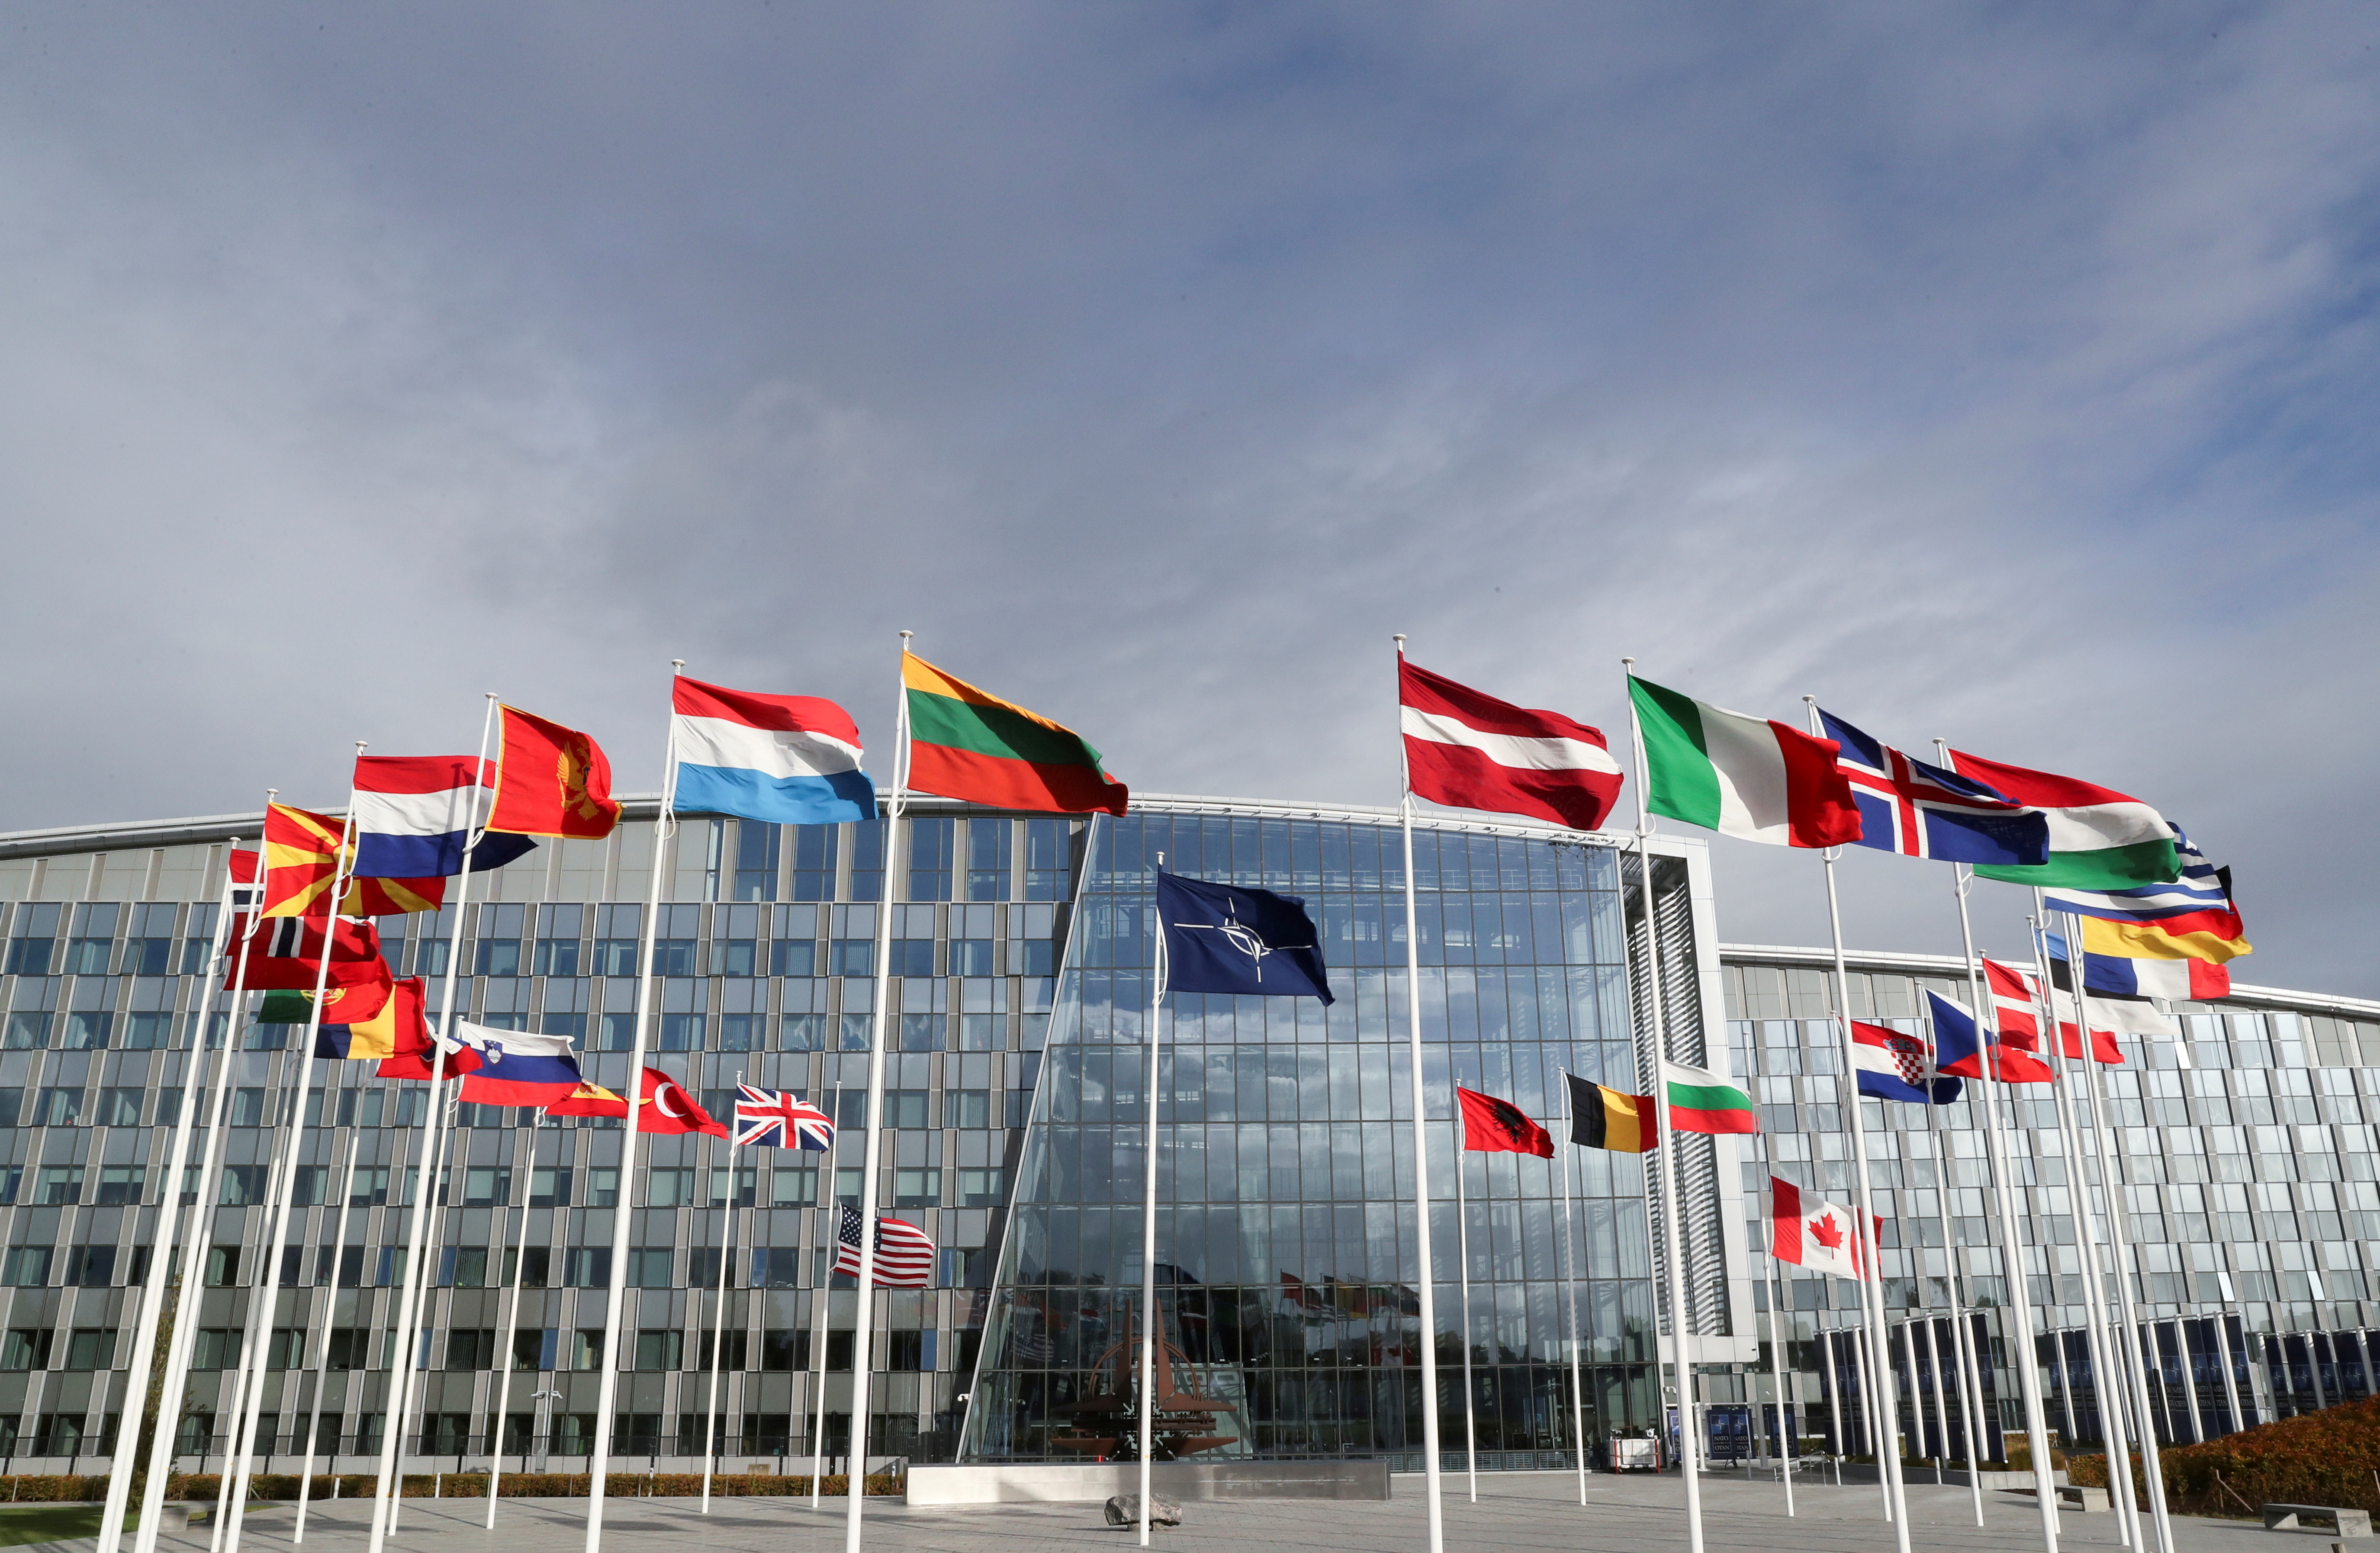 Οι σημαίες κυματίζουν έξω από το αρχηγείο της Συμμαχίας πριν από μια συνάντηση των Υπουργών Άμυνας του ΝΑΤΟ, στις Βρυξέλλες, Βέλγιο, 21 Οκτωβρίου 2021. REUTERS/Pascal Rossignol/File Photo